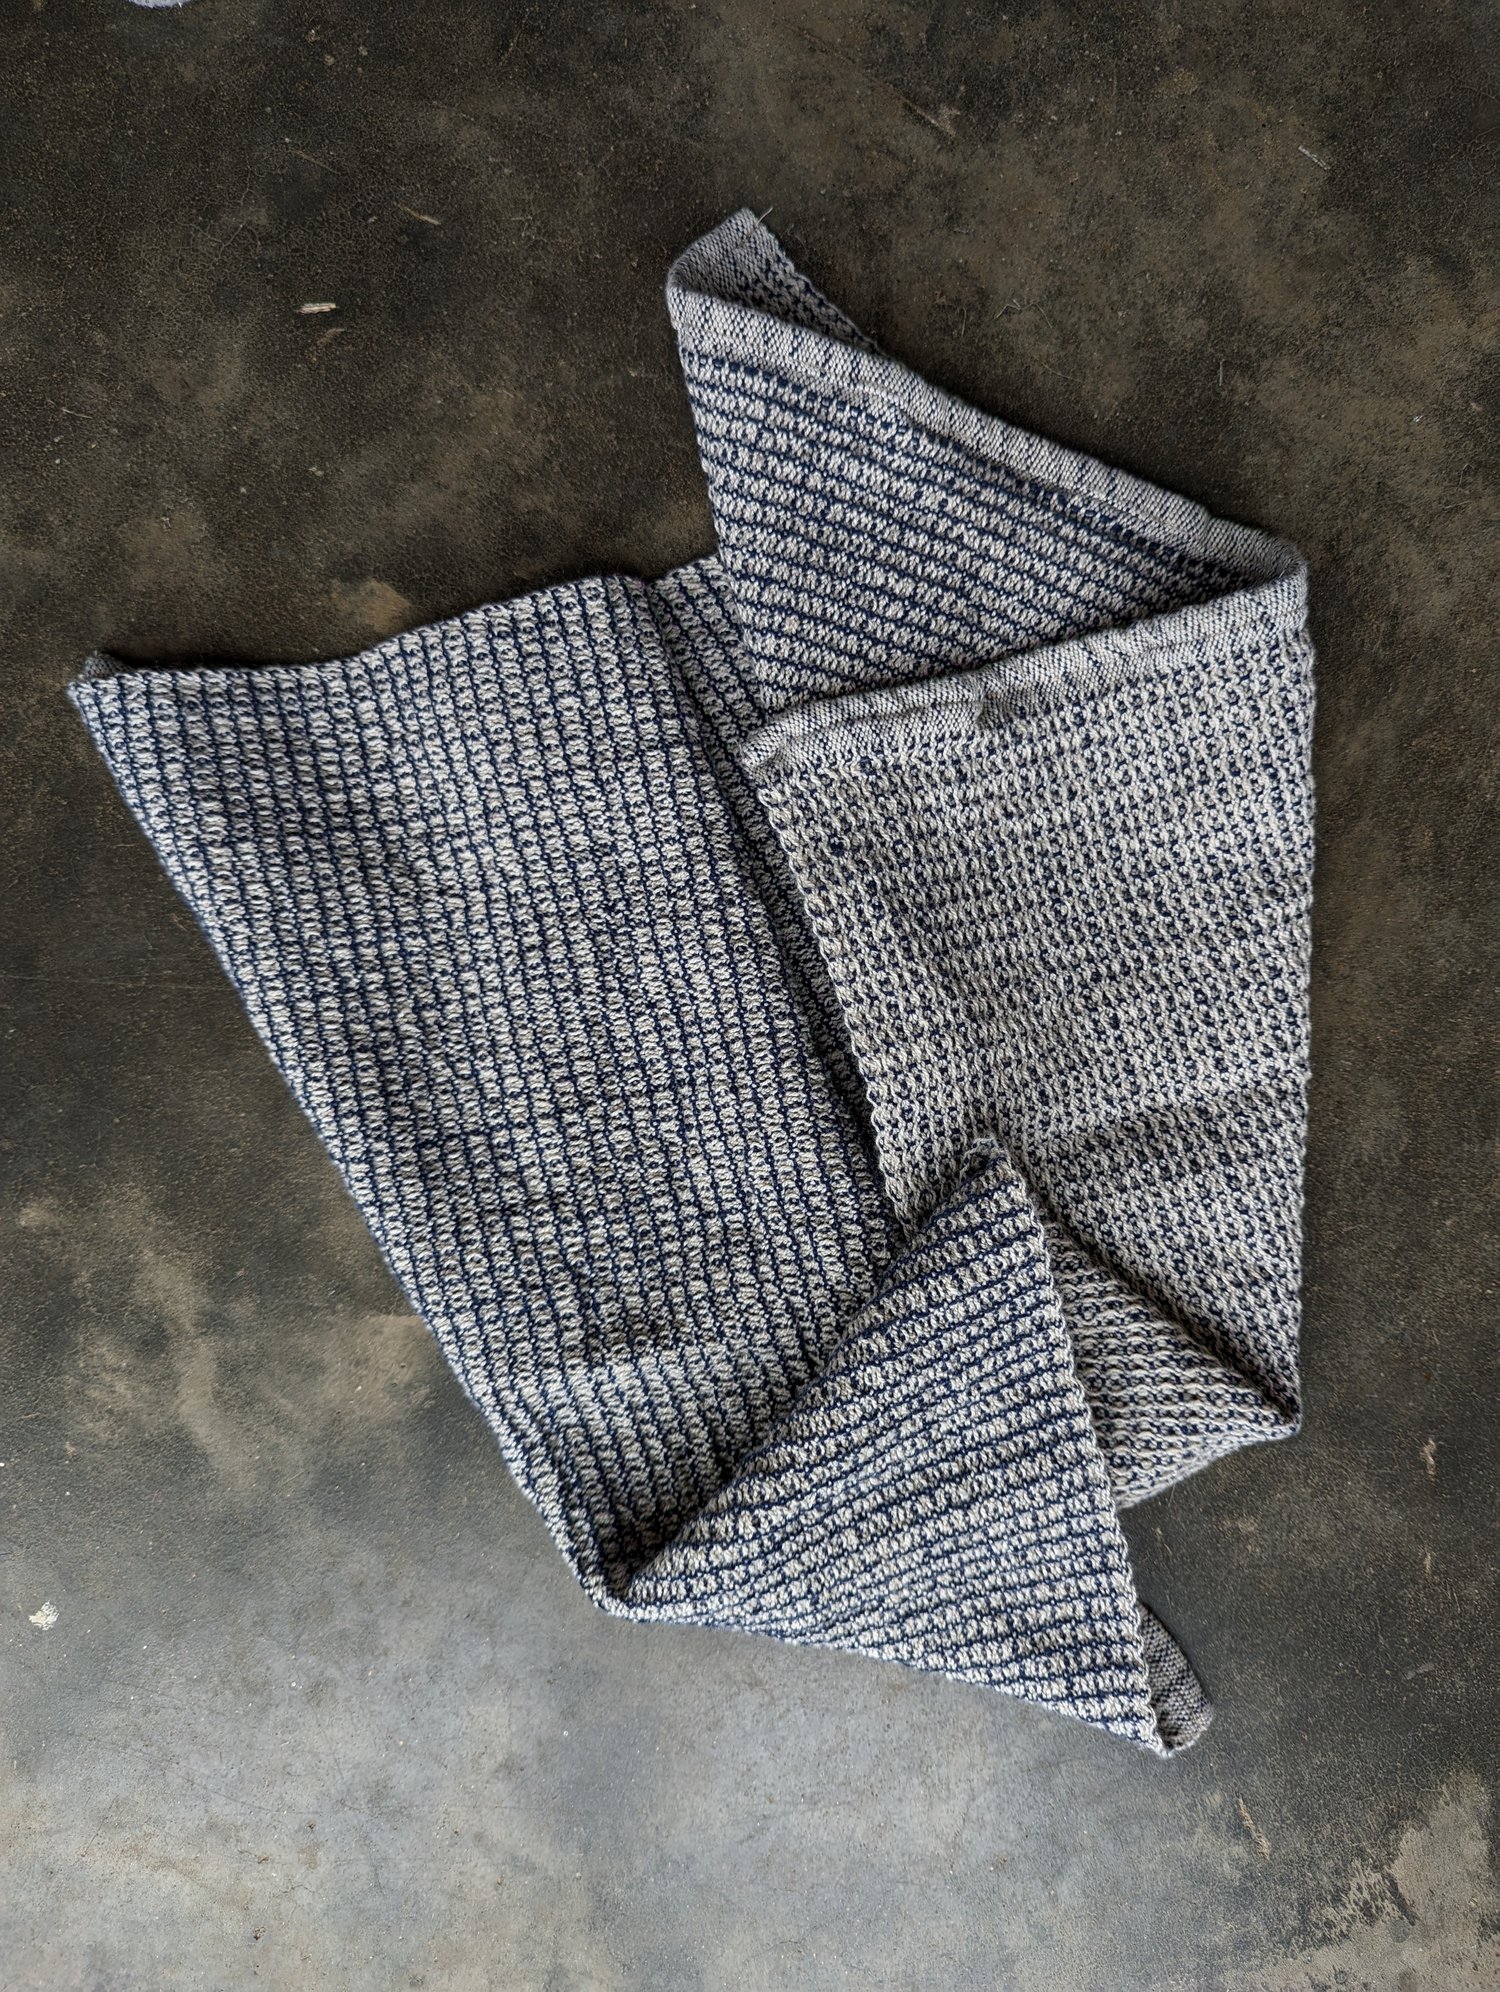 handwoven waffle towel organic cotton linen — deanna lynch textiles